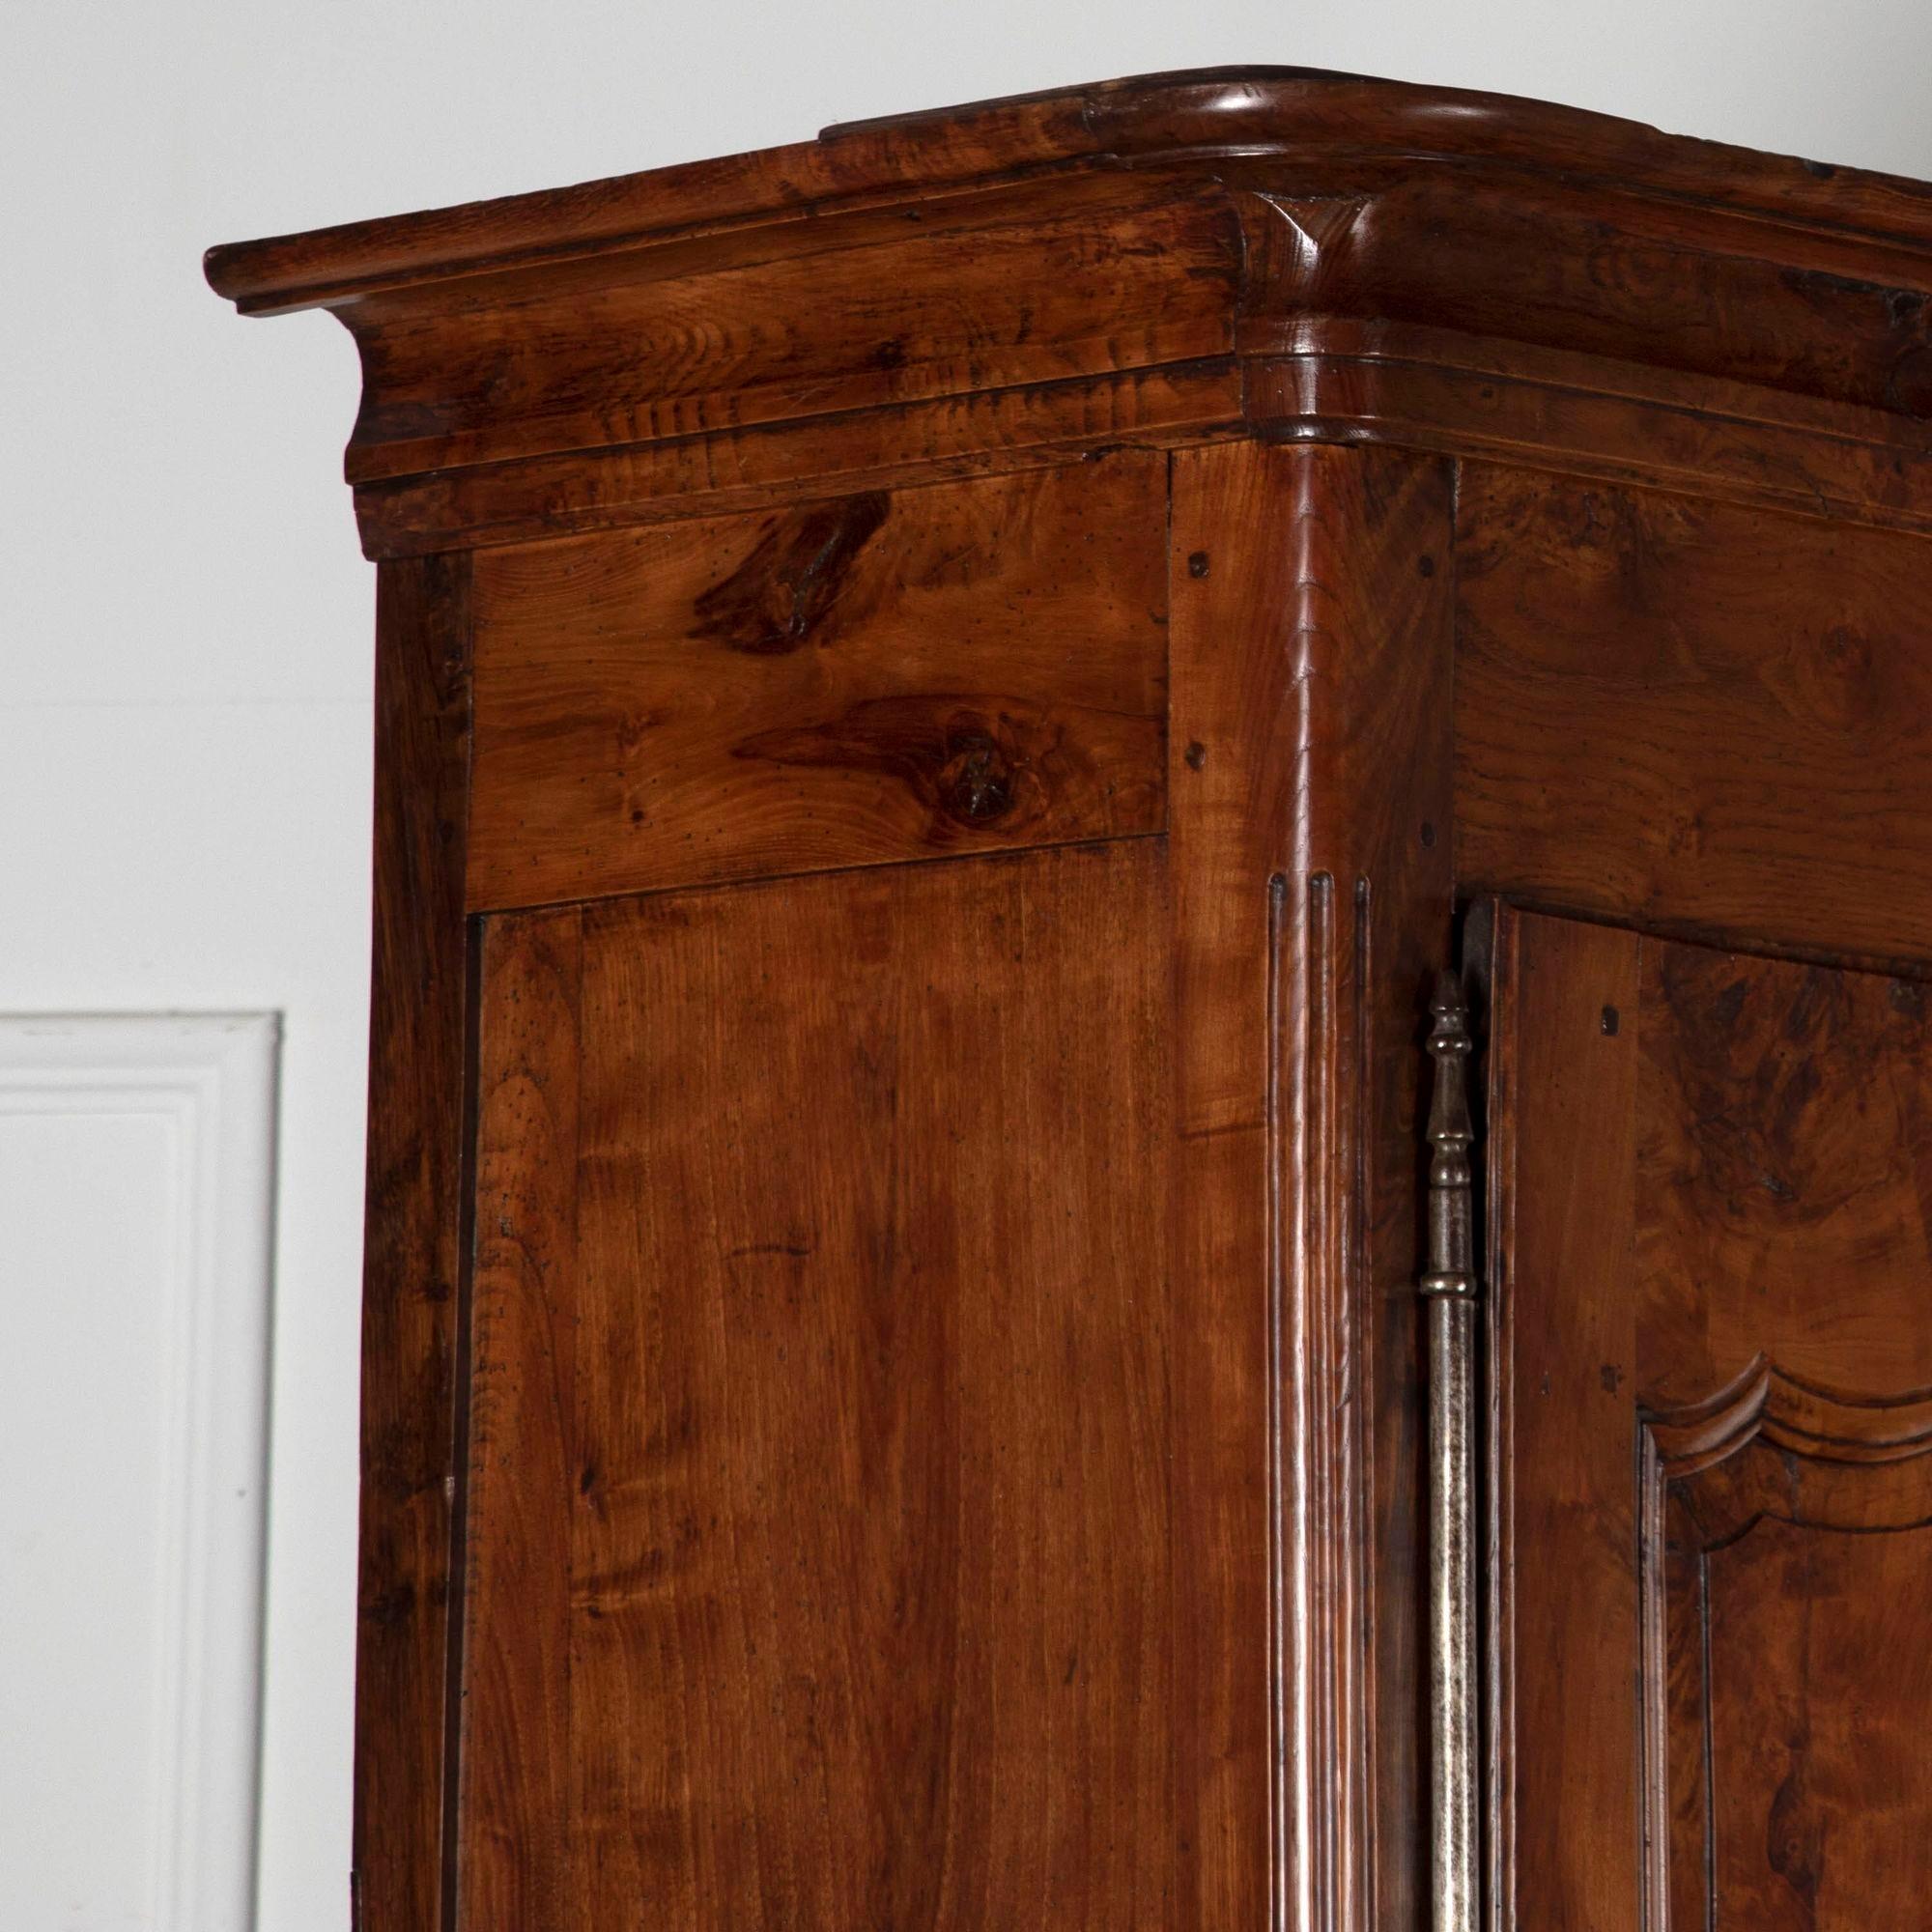 Bel exemple d'une armoire très utile.
Ce buffet deux corps du 19ème siècle possède une couleur magnifique provenant de cette loupe d'orme rare.
Cette armoire a été nettoyée, cirée et munie de clés. Elle présente des détails finement sculptés.